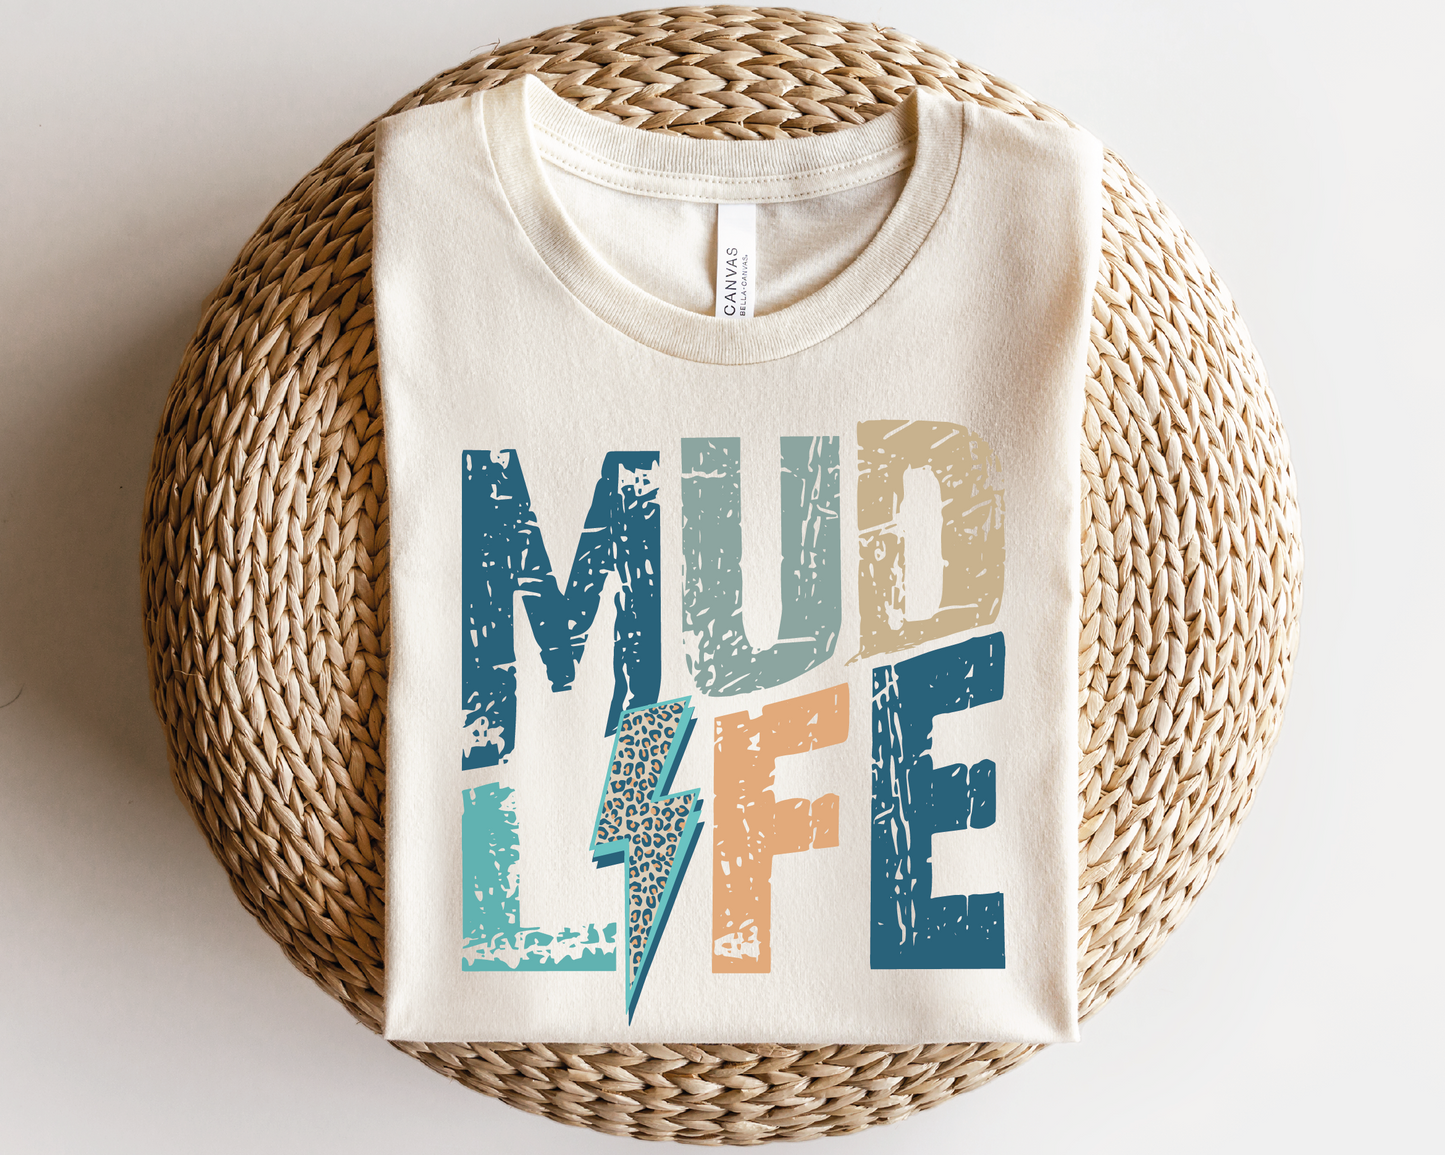 Mud Life SVG PNG | Distressed font Sublimation | Leopard Lightning Bolt | Summer T shirt Design